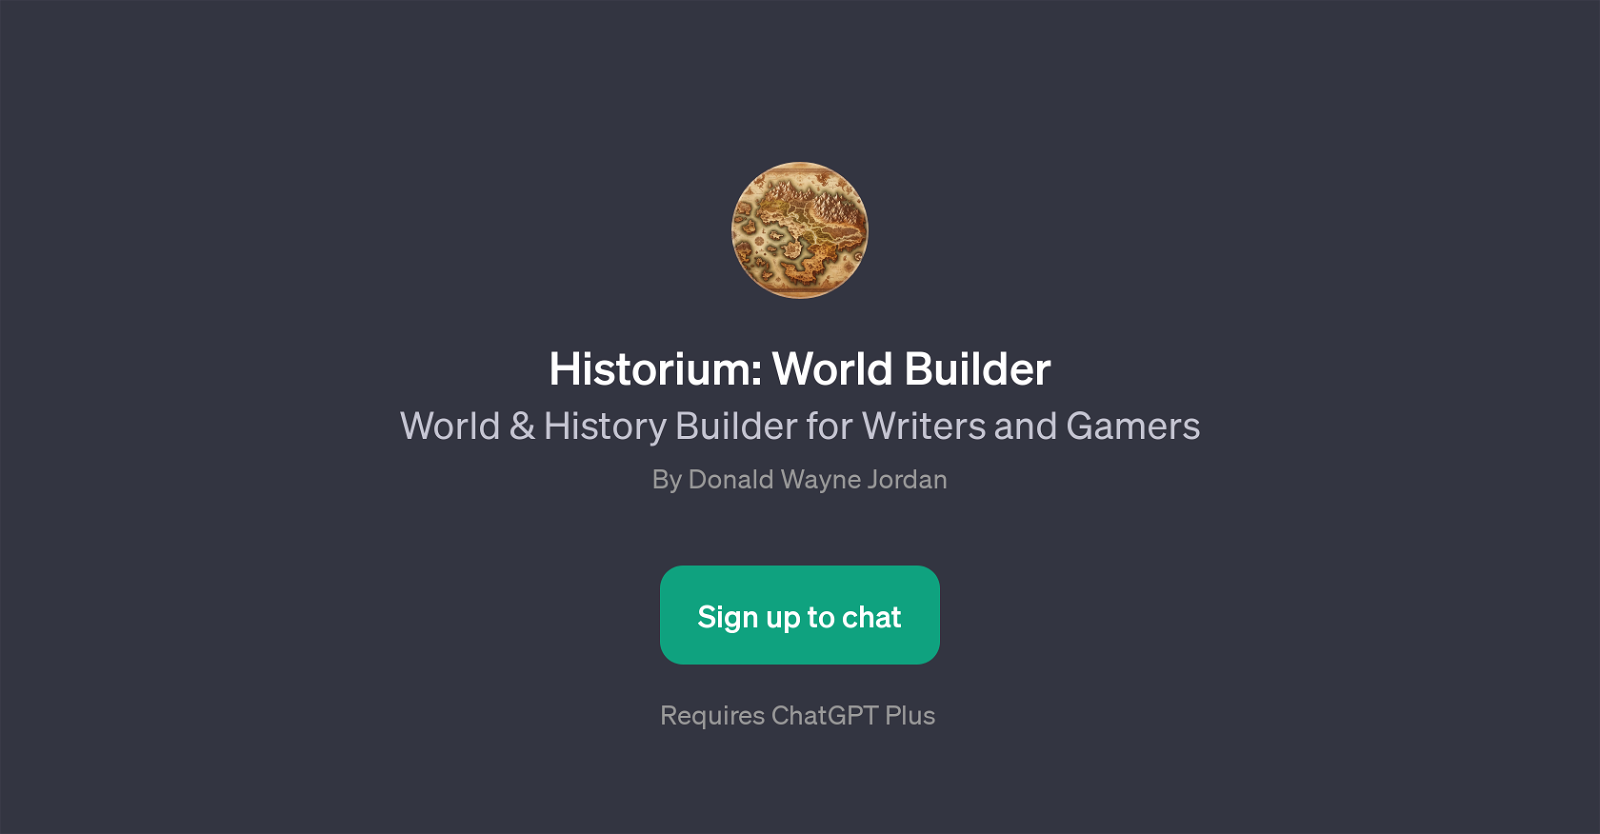 Historium: World Builder website